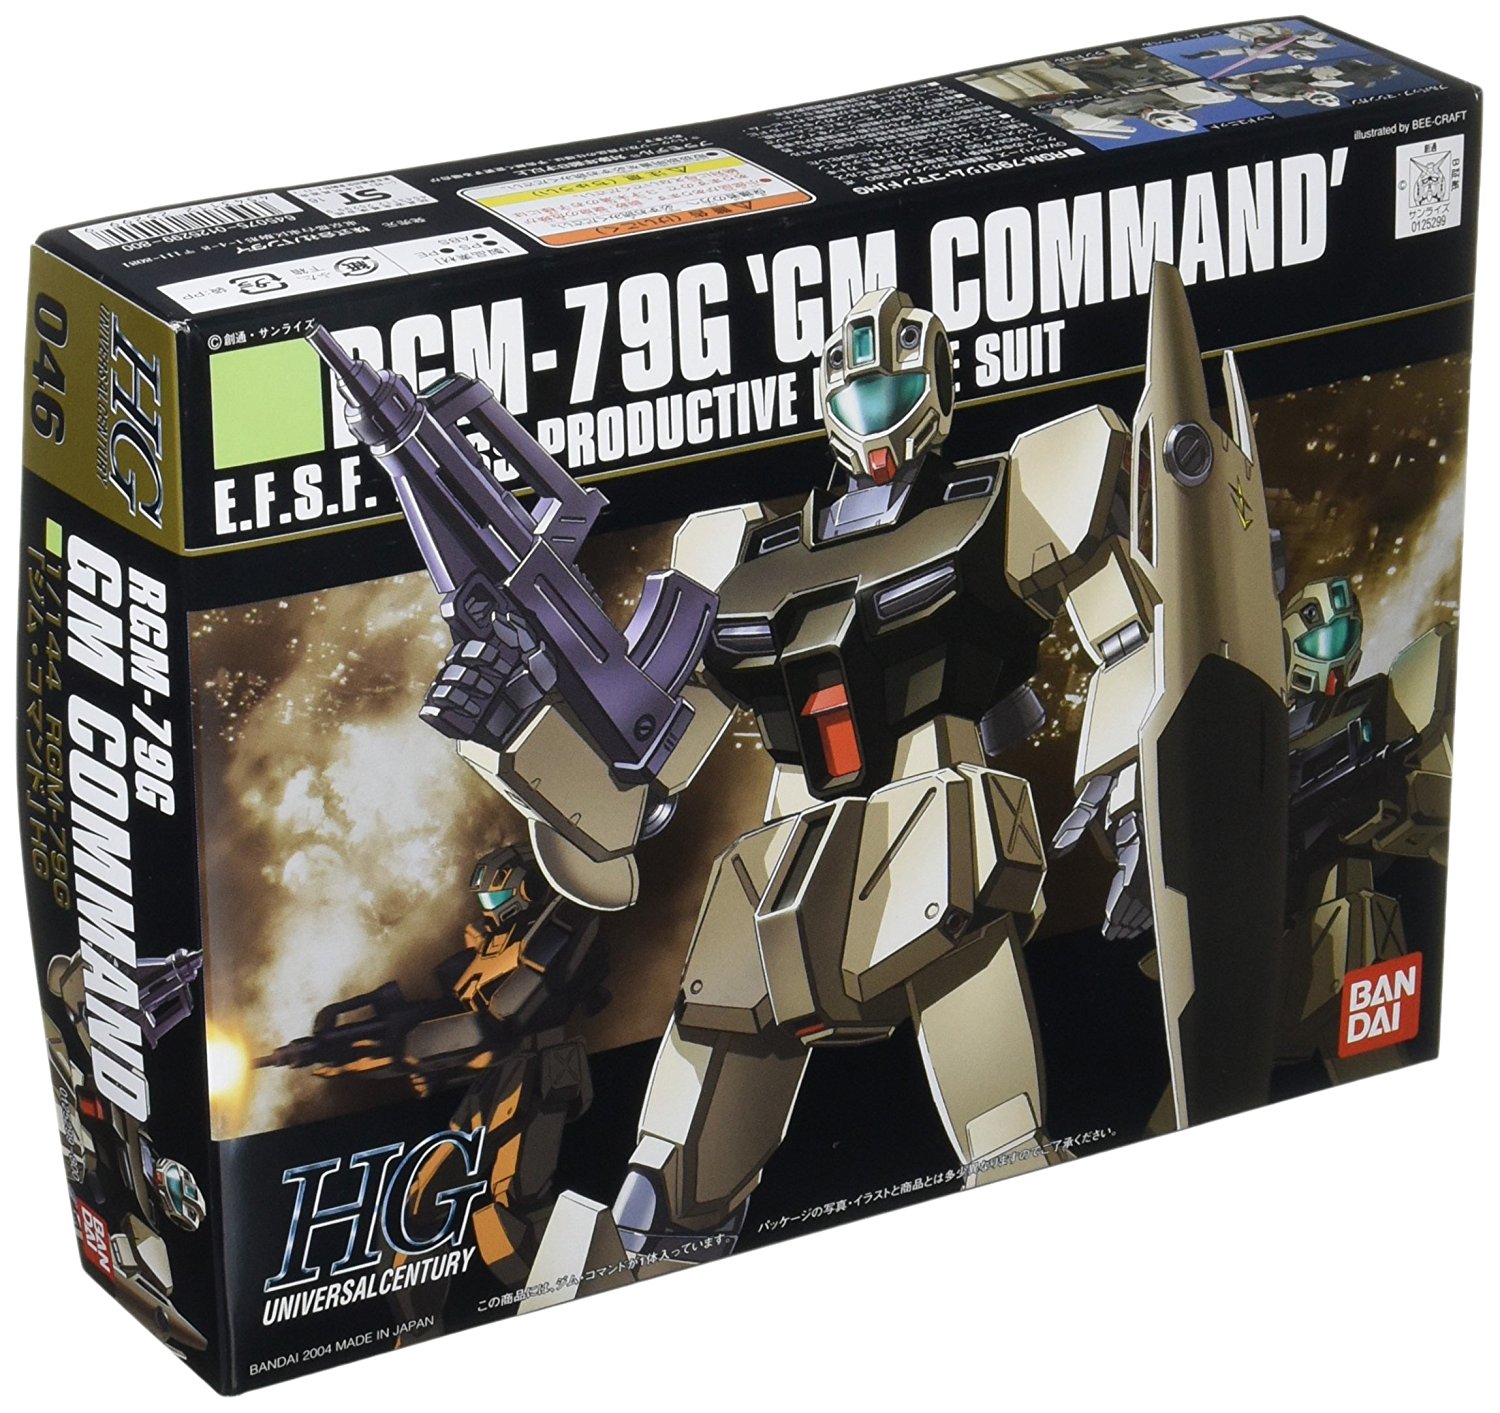 Gundam High Grade Universal Century #046: RGM-79G GM COMMAND 